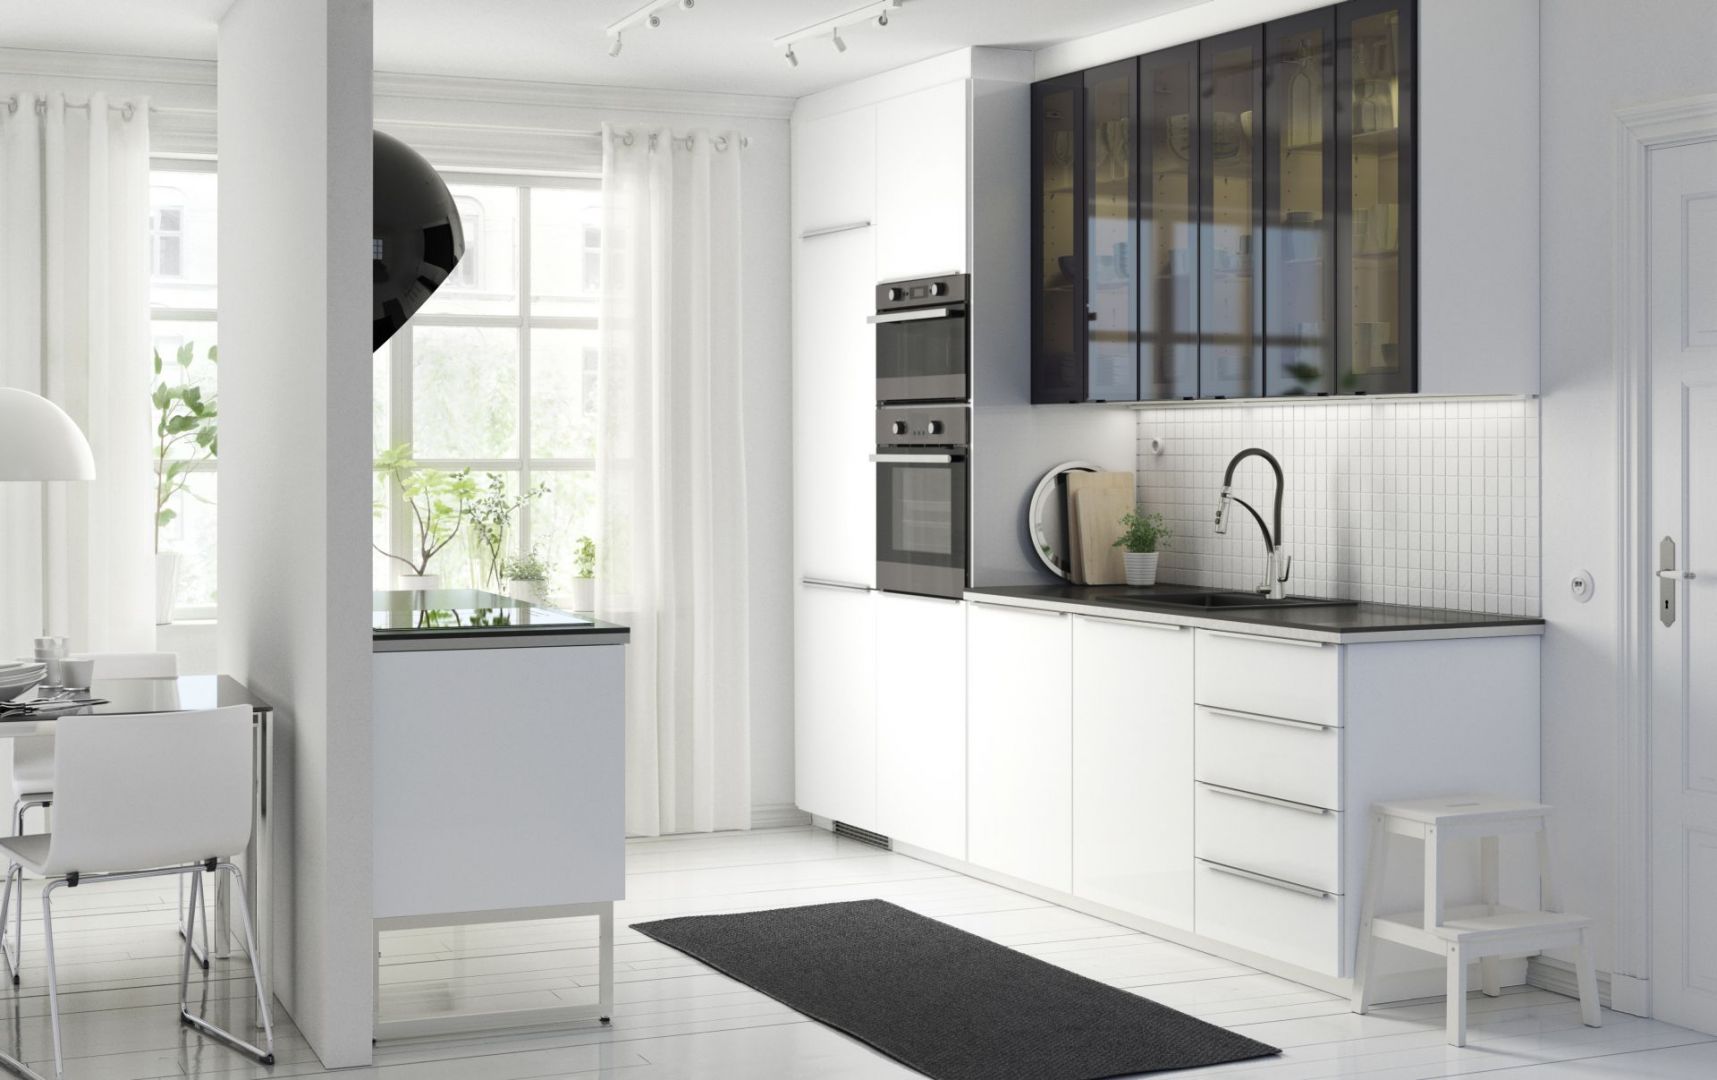 W małej kuchni doskonale sprawdzają się jasne kolory i duża ilość przeszkleń. To sprawia, że kuchnia wydaje się optycznie większa. Fot. IKEA